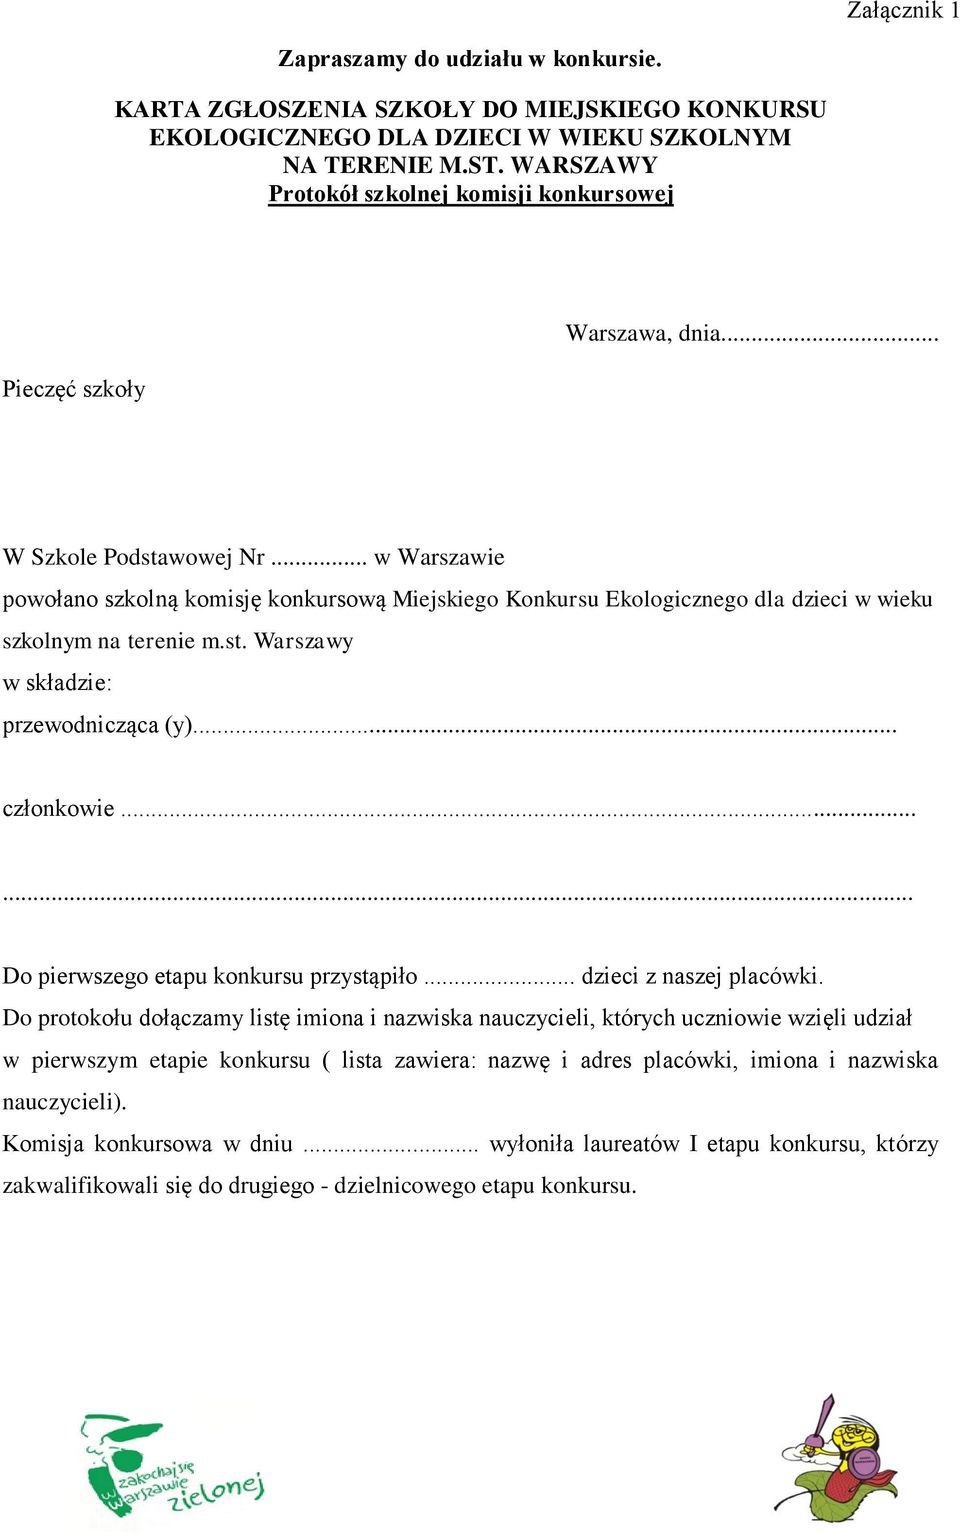 .. w Warszawie powołano szkolną komisję konkursową Miejskiego Konkursu Ekologicznego dla dzieci w wieku szkolnym na terenie m.st. Warszawy w składzie: przewodnicząca (y)... członkowie.